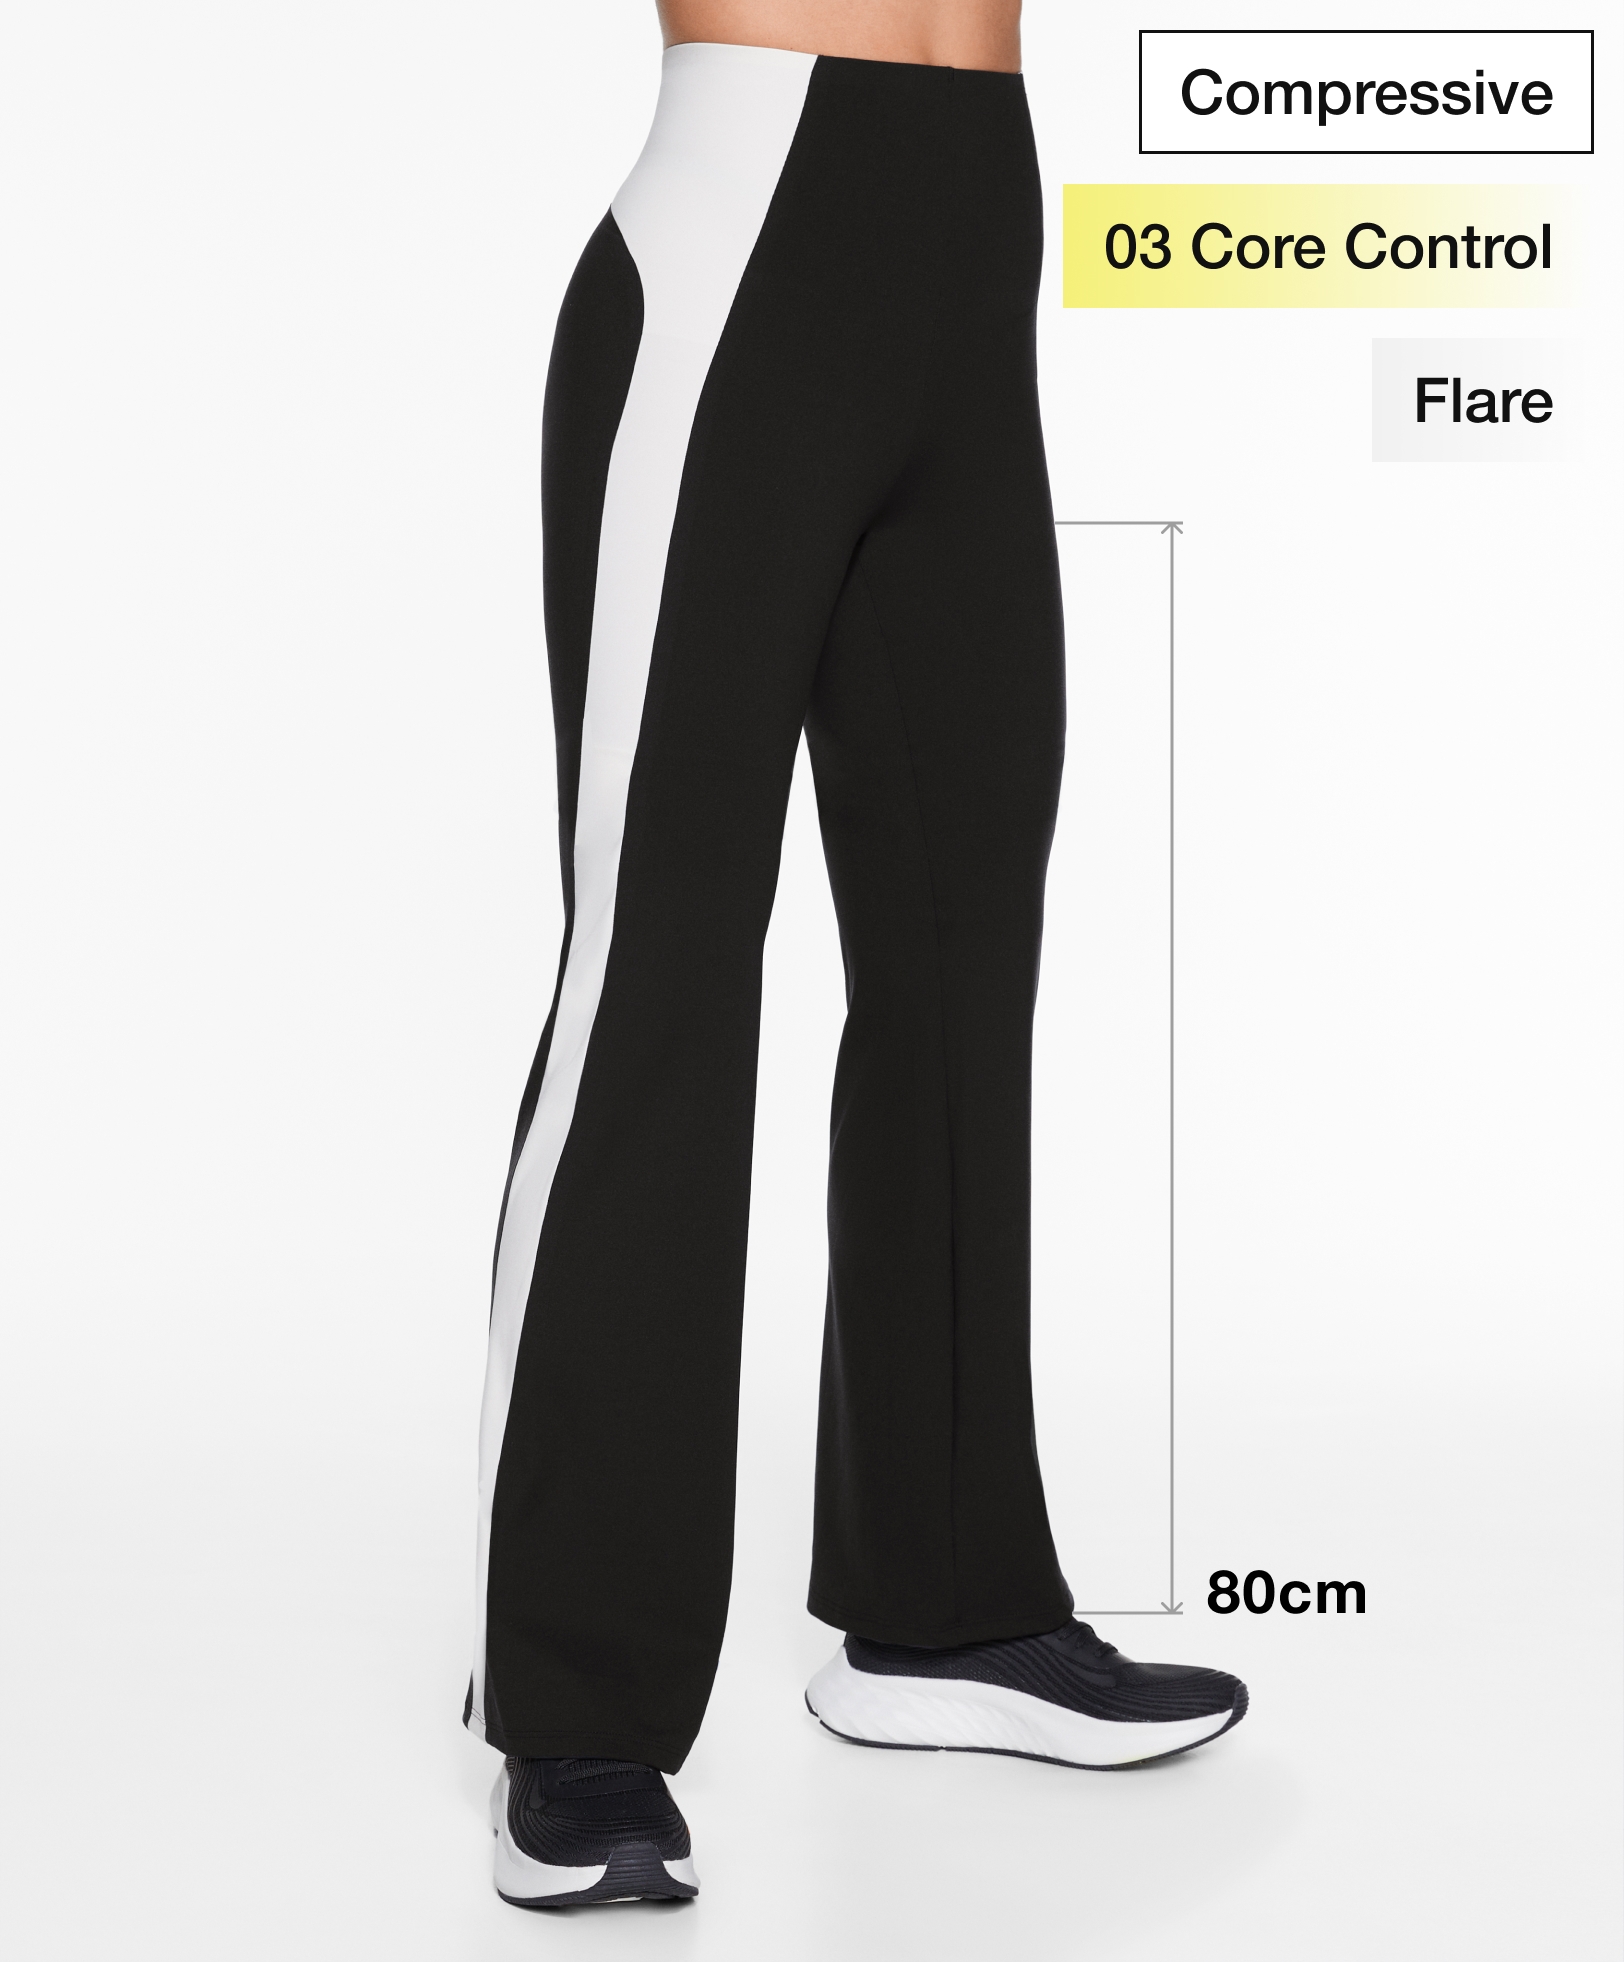 Παντελόνι flare compressive core control με τμήματα